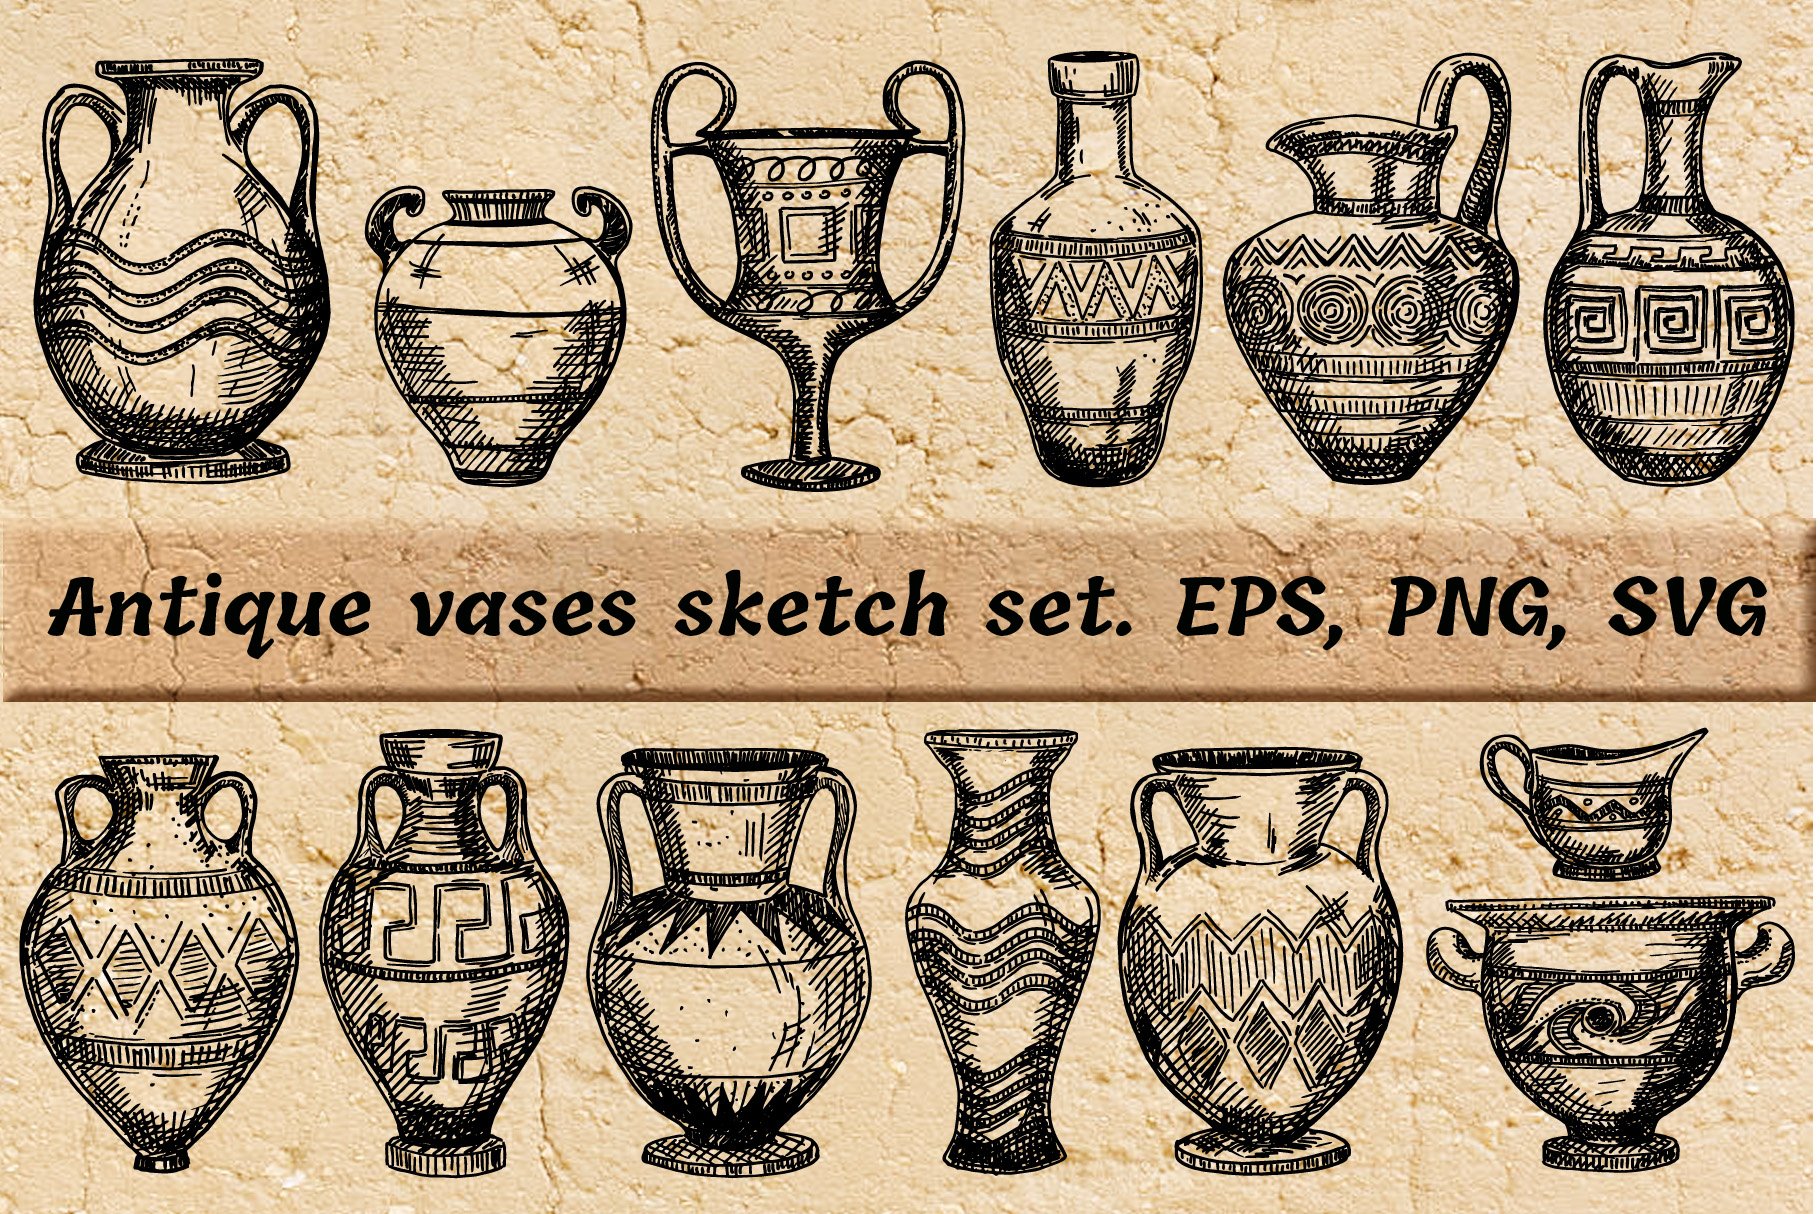 Antique Greek vases set. Sketch preview image.